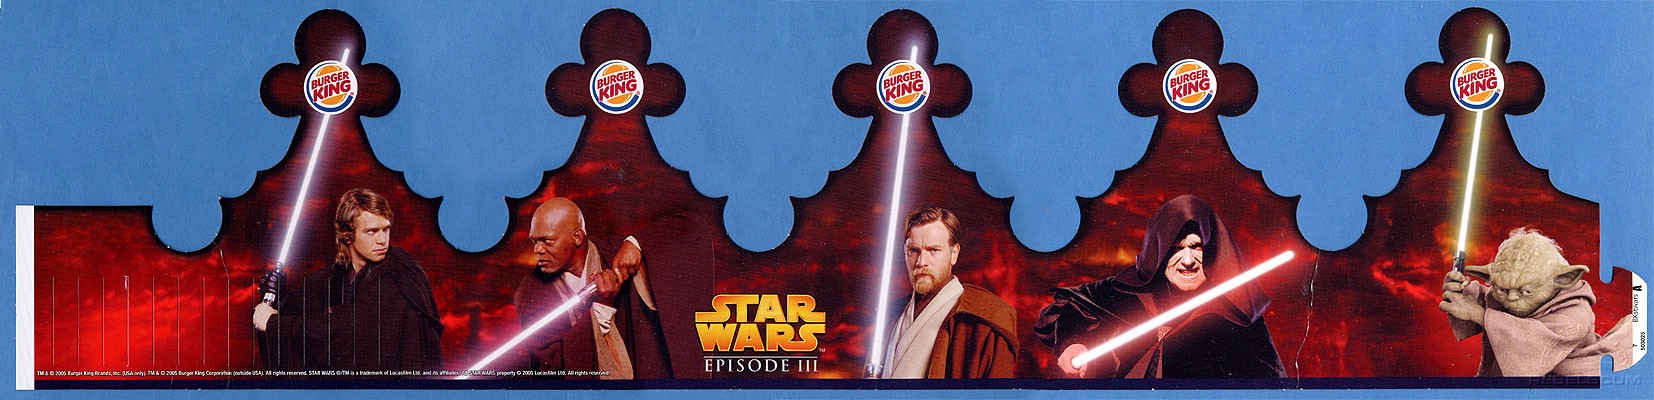 Burger King Star Wars Crown